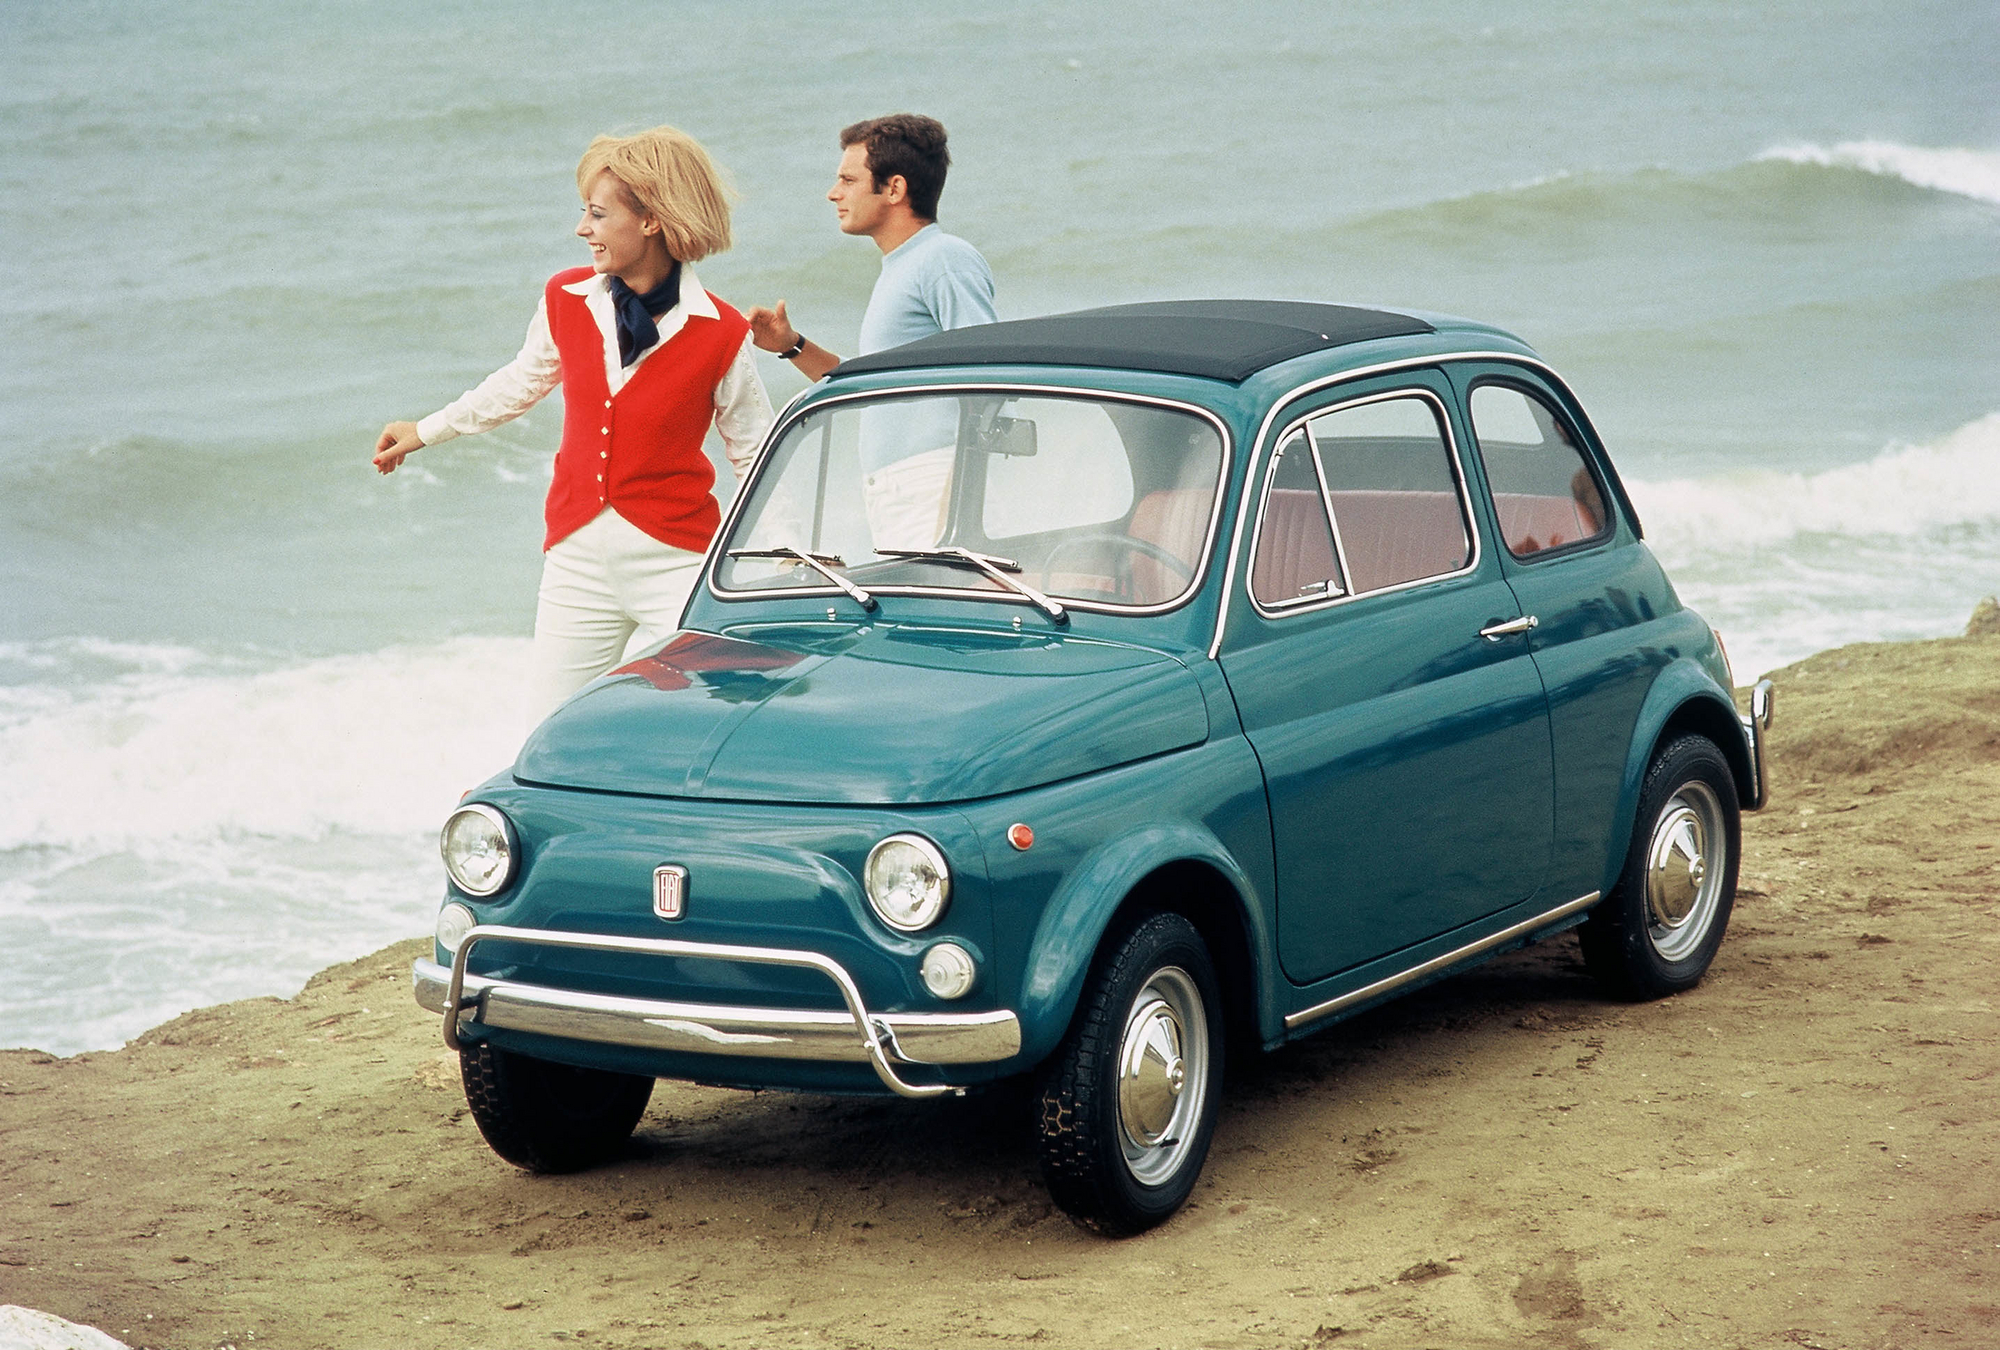 Fiat 500 De Luxe